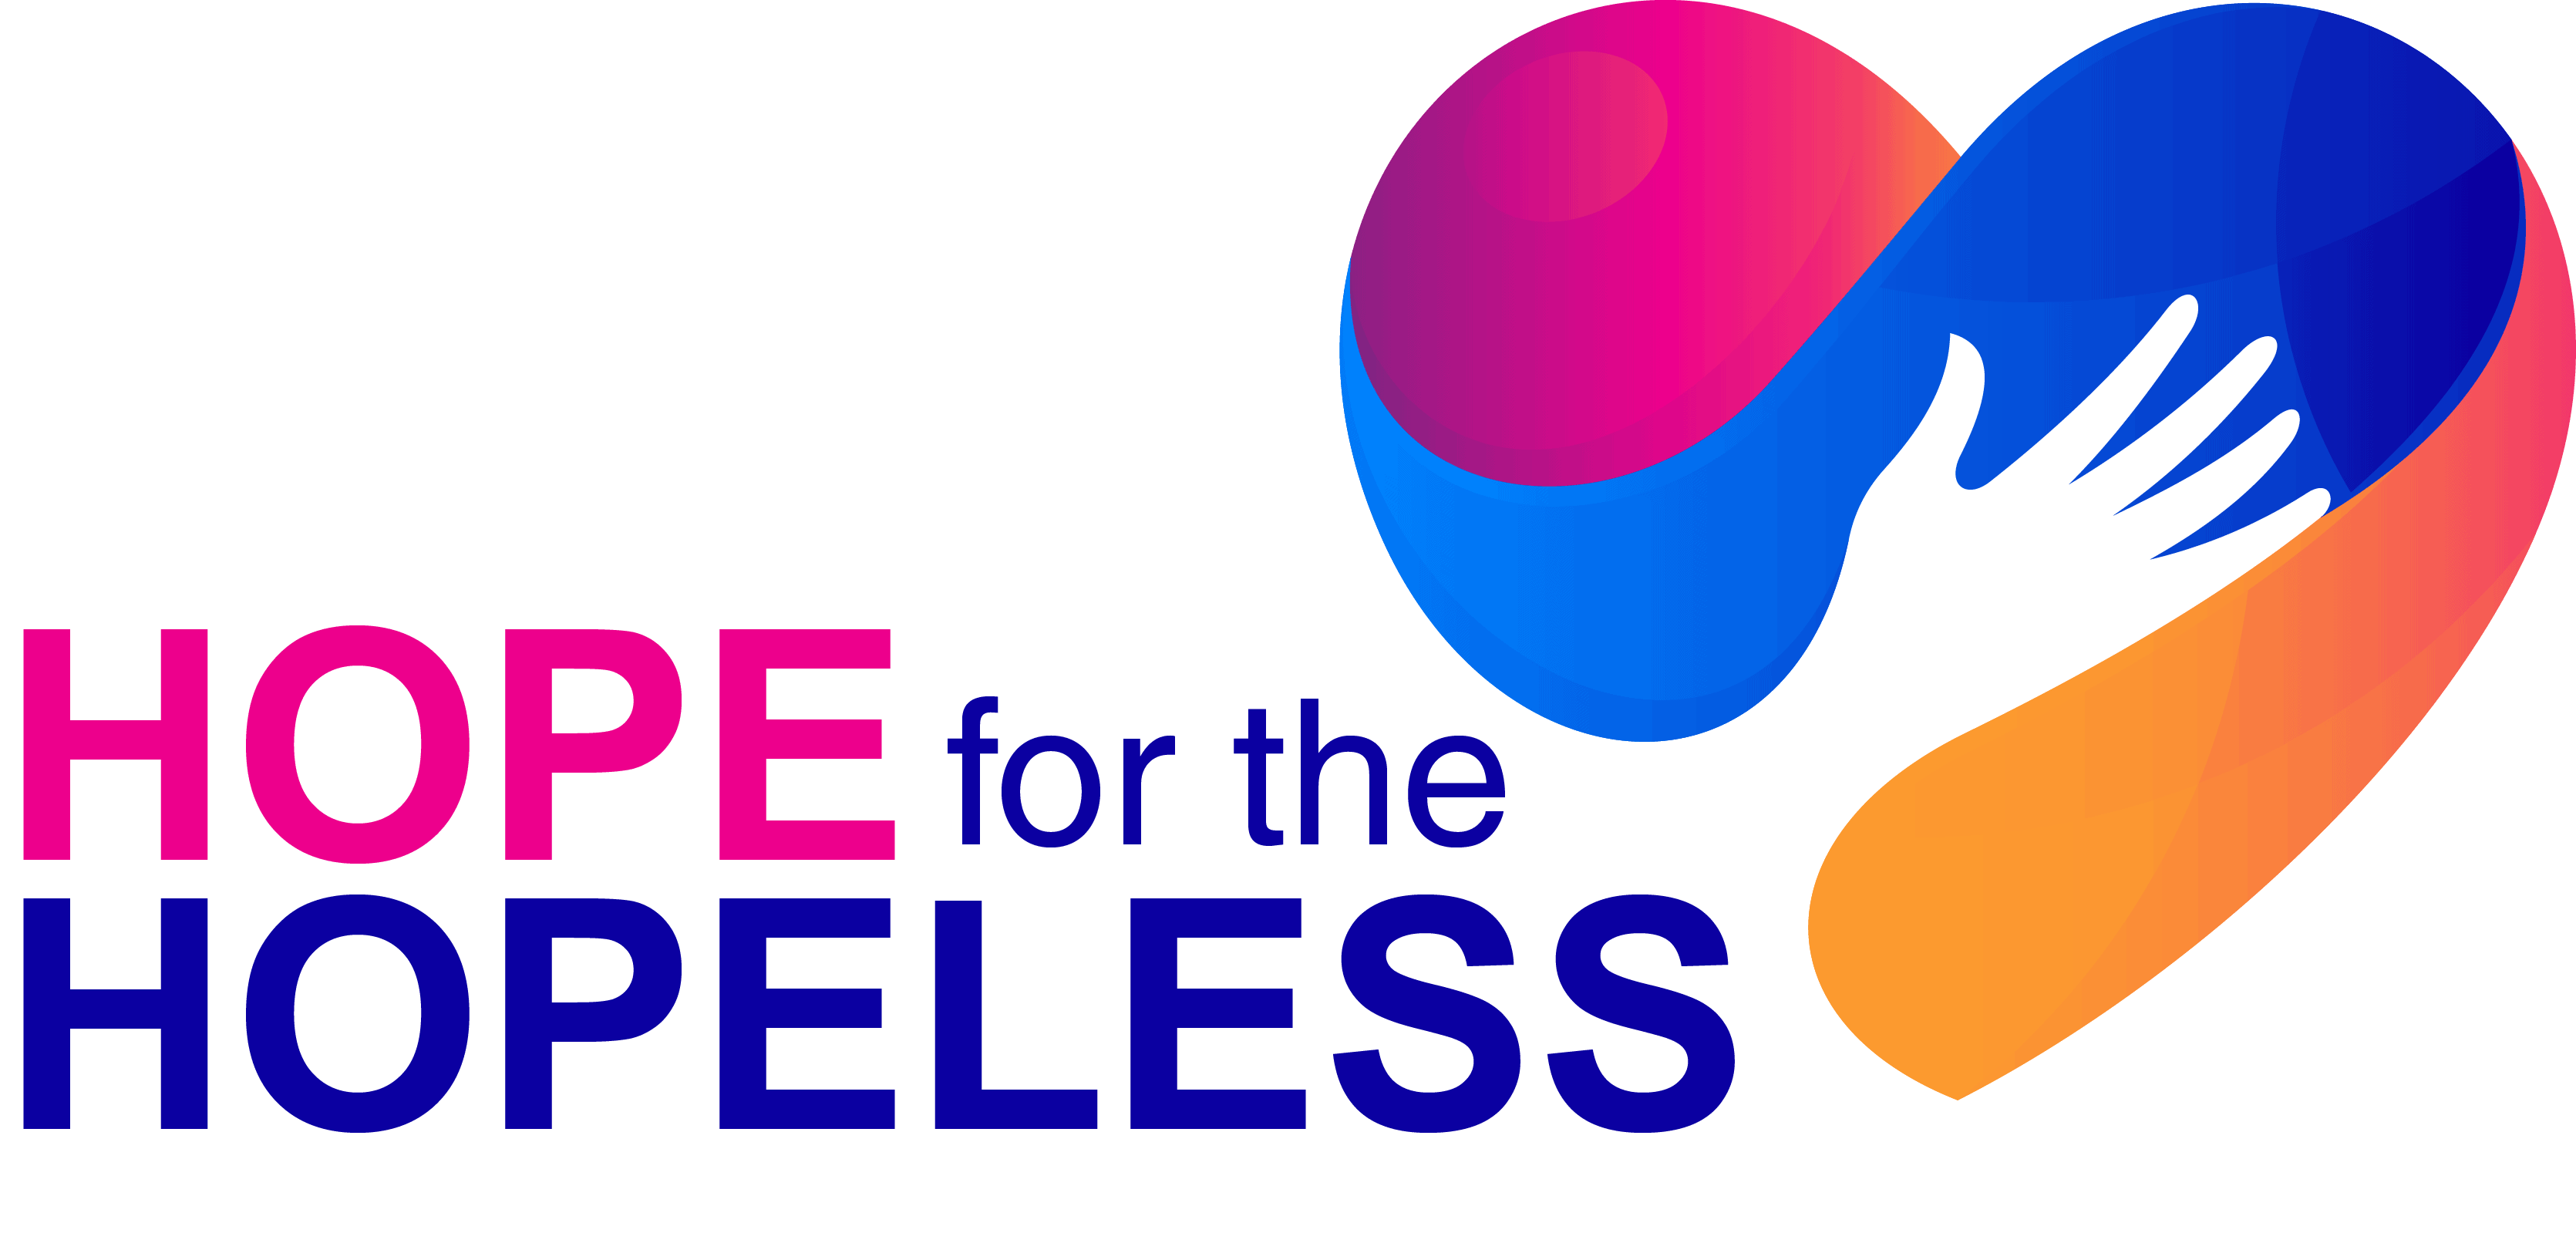 Hope for the Hopeless Logo